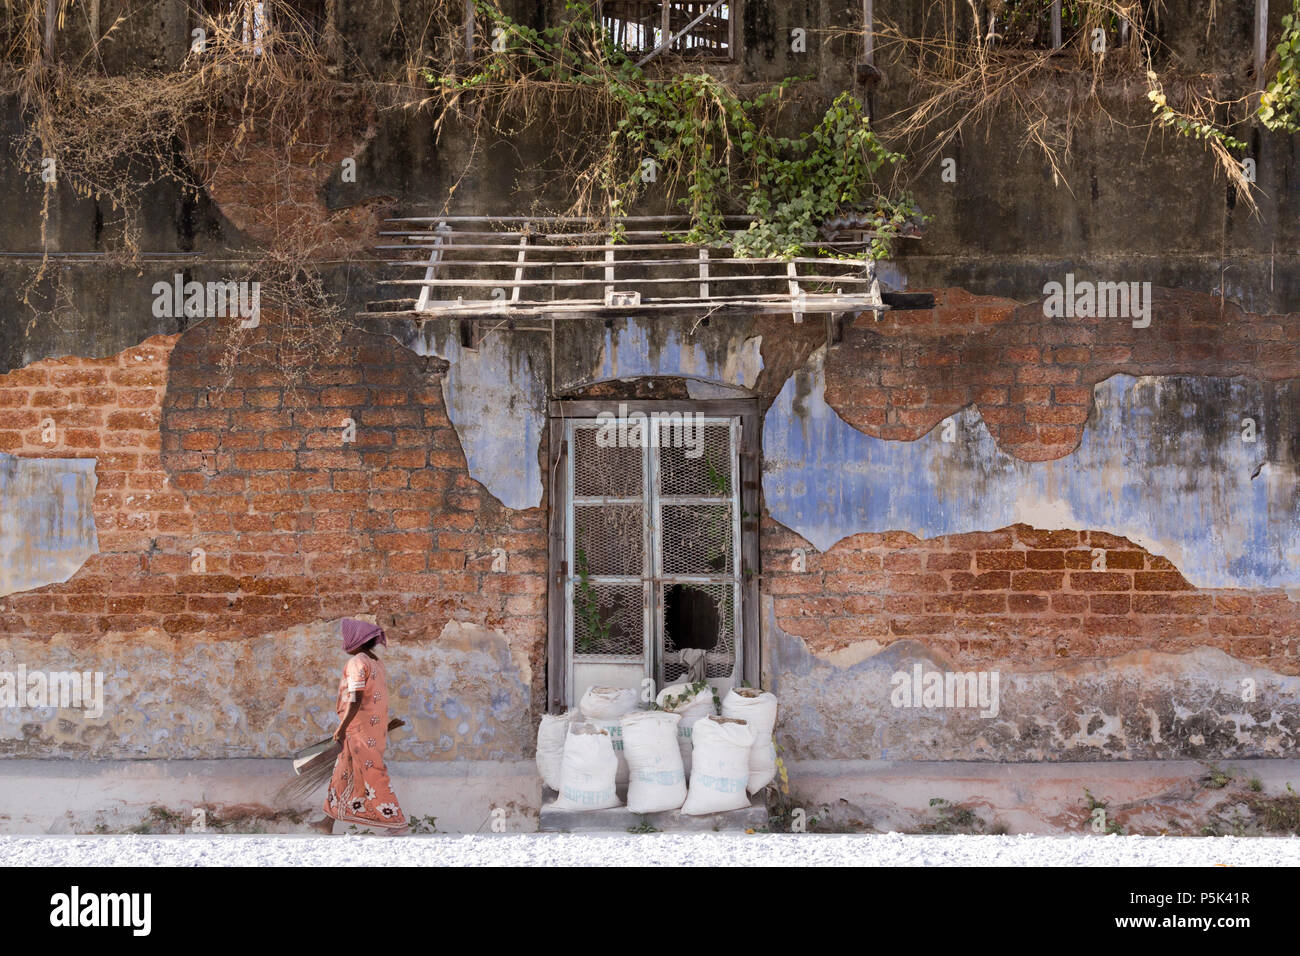 Frau fegt im Innenhof eines alten kolonialen Gebäude verwendet in Ingwer zu handeln. Basar Straße, Kochi, Kerala, Indien. Stockfoto